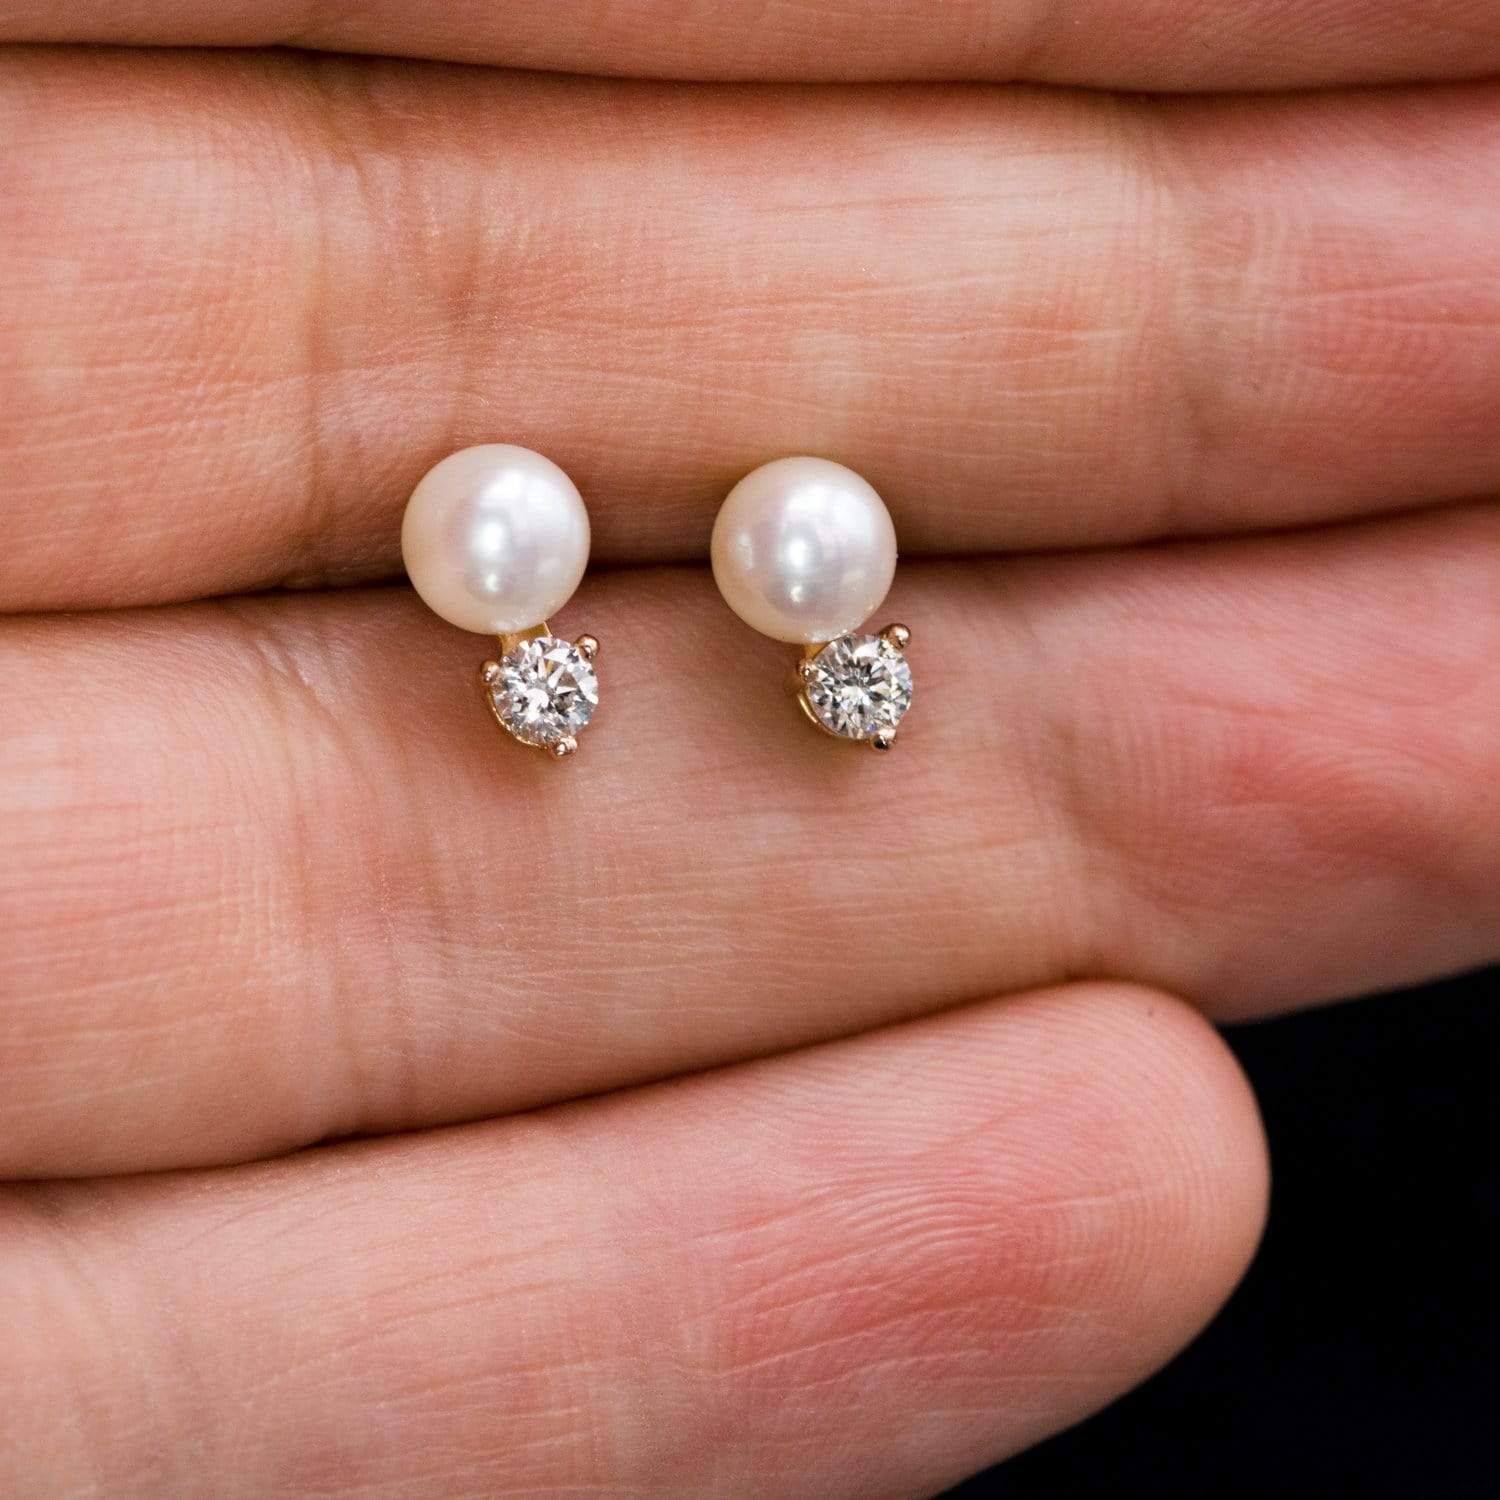 Buy 925 Silver White Pearl Earrings Online  Jpearlscom